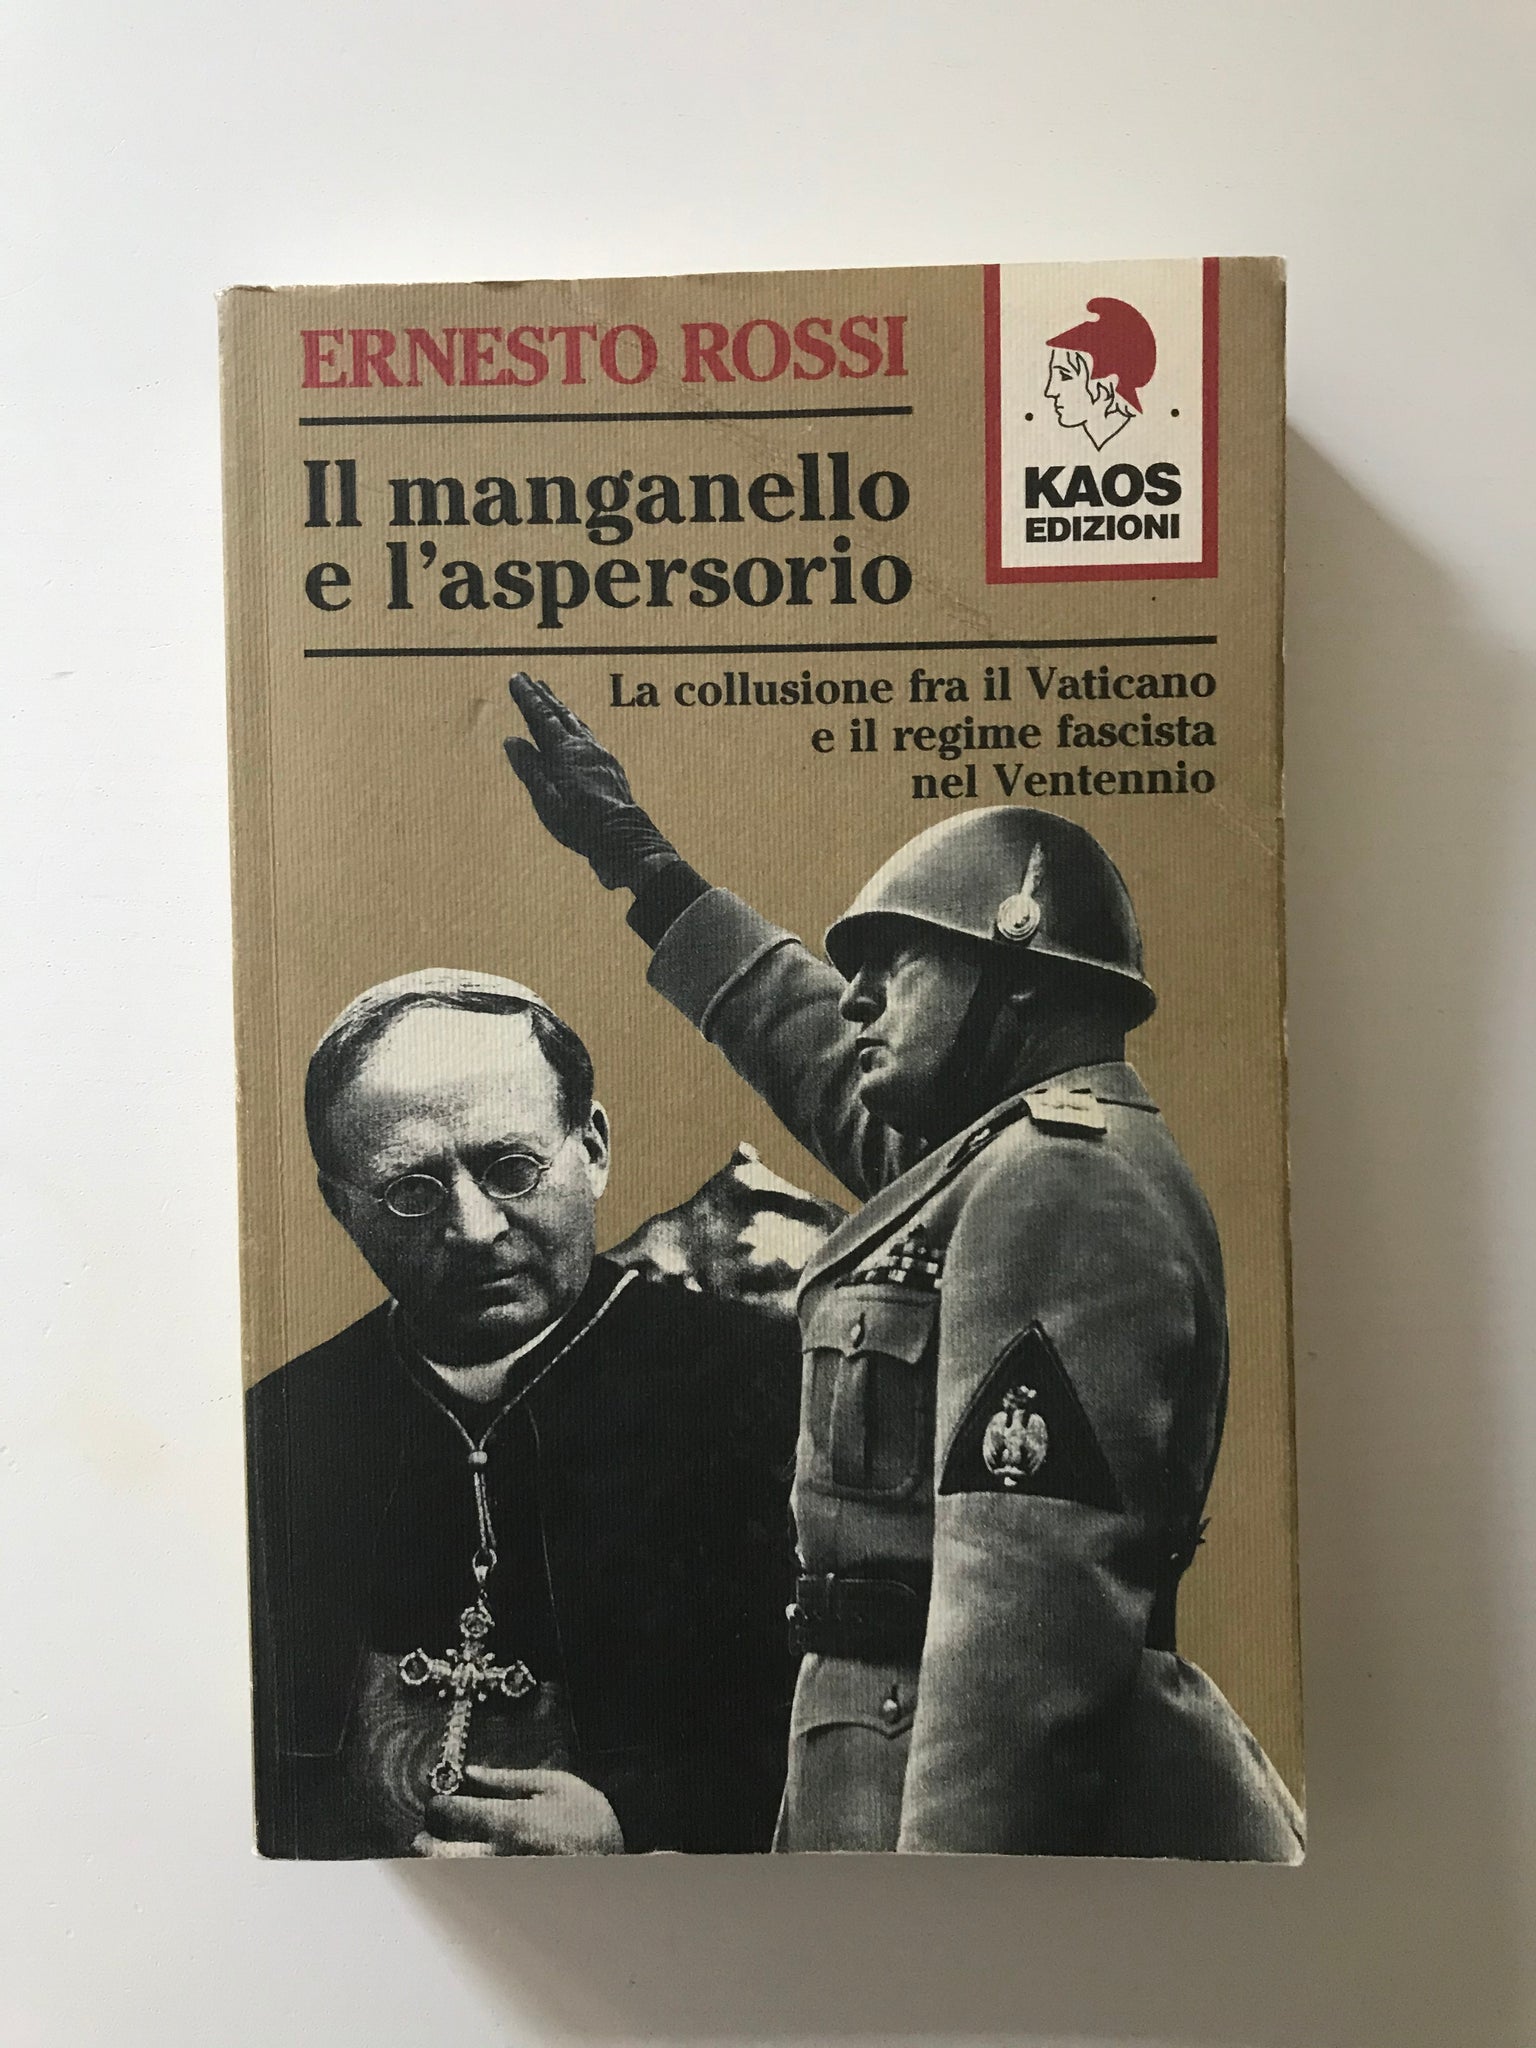 Ernesto Rossi - Il manganello e l'aspersorio La collusione tra il Vaticano e il regime fascista nel Ventennio